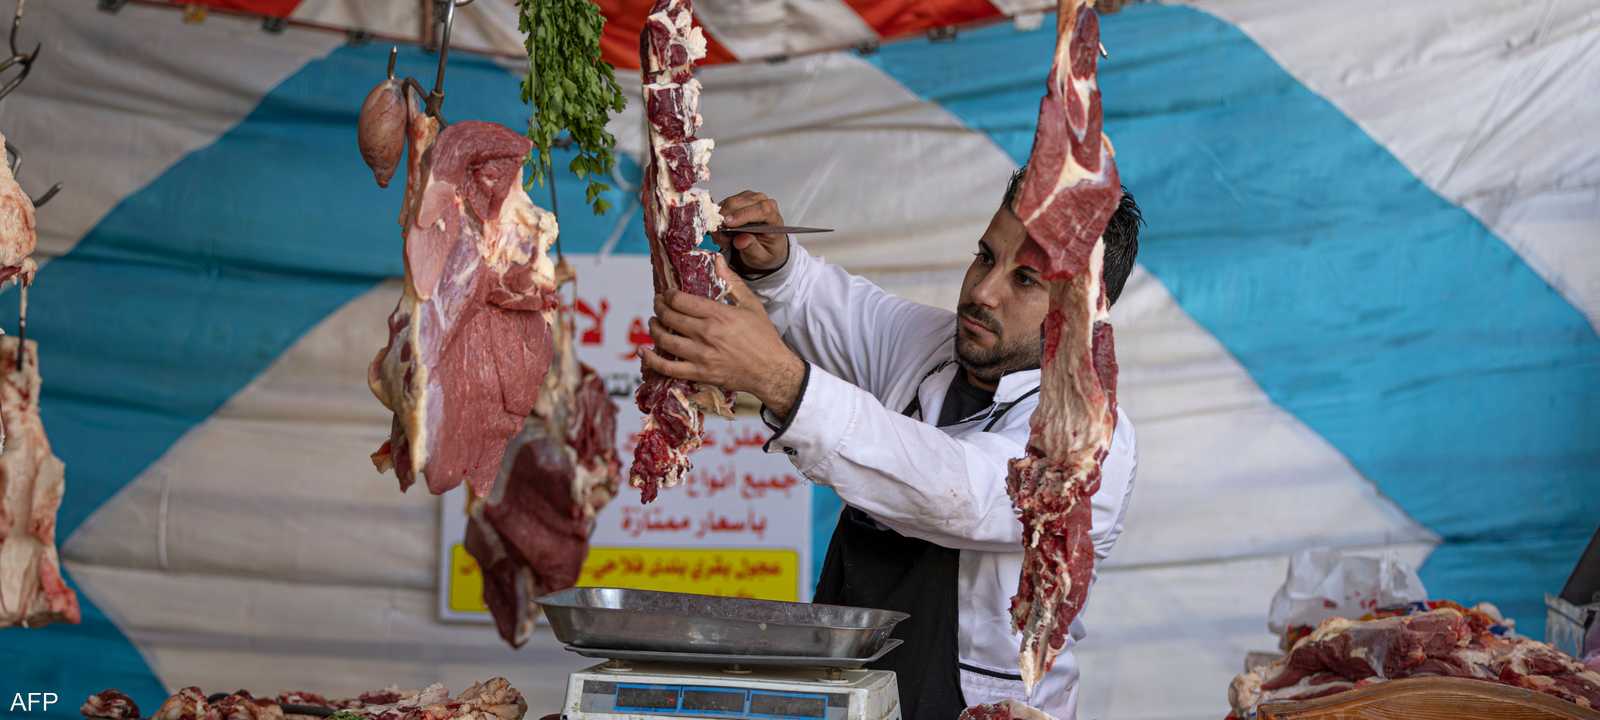 متجر للحوم الحمراء في مصر - أرشيفية